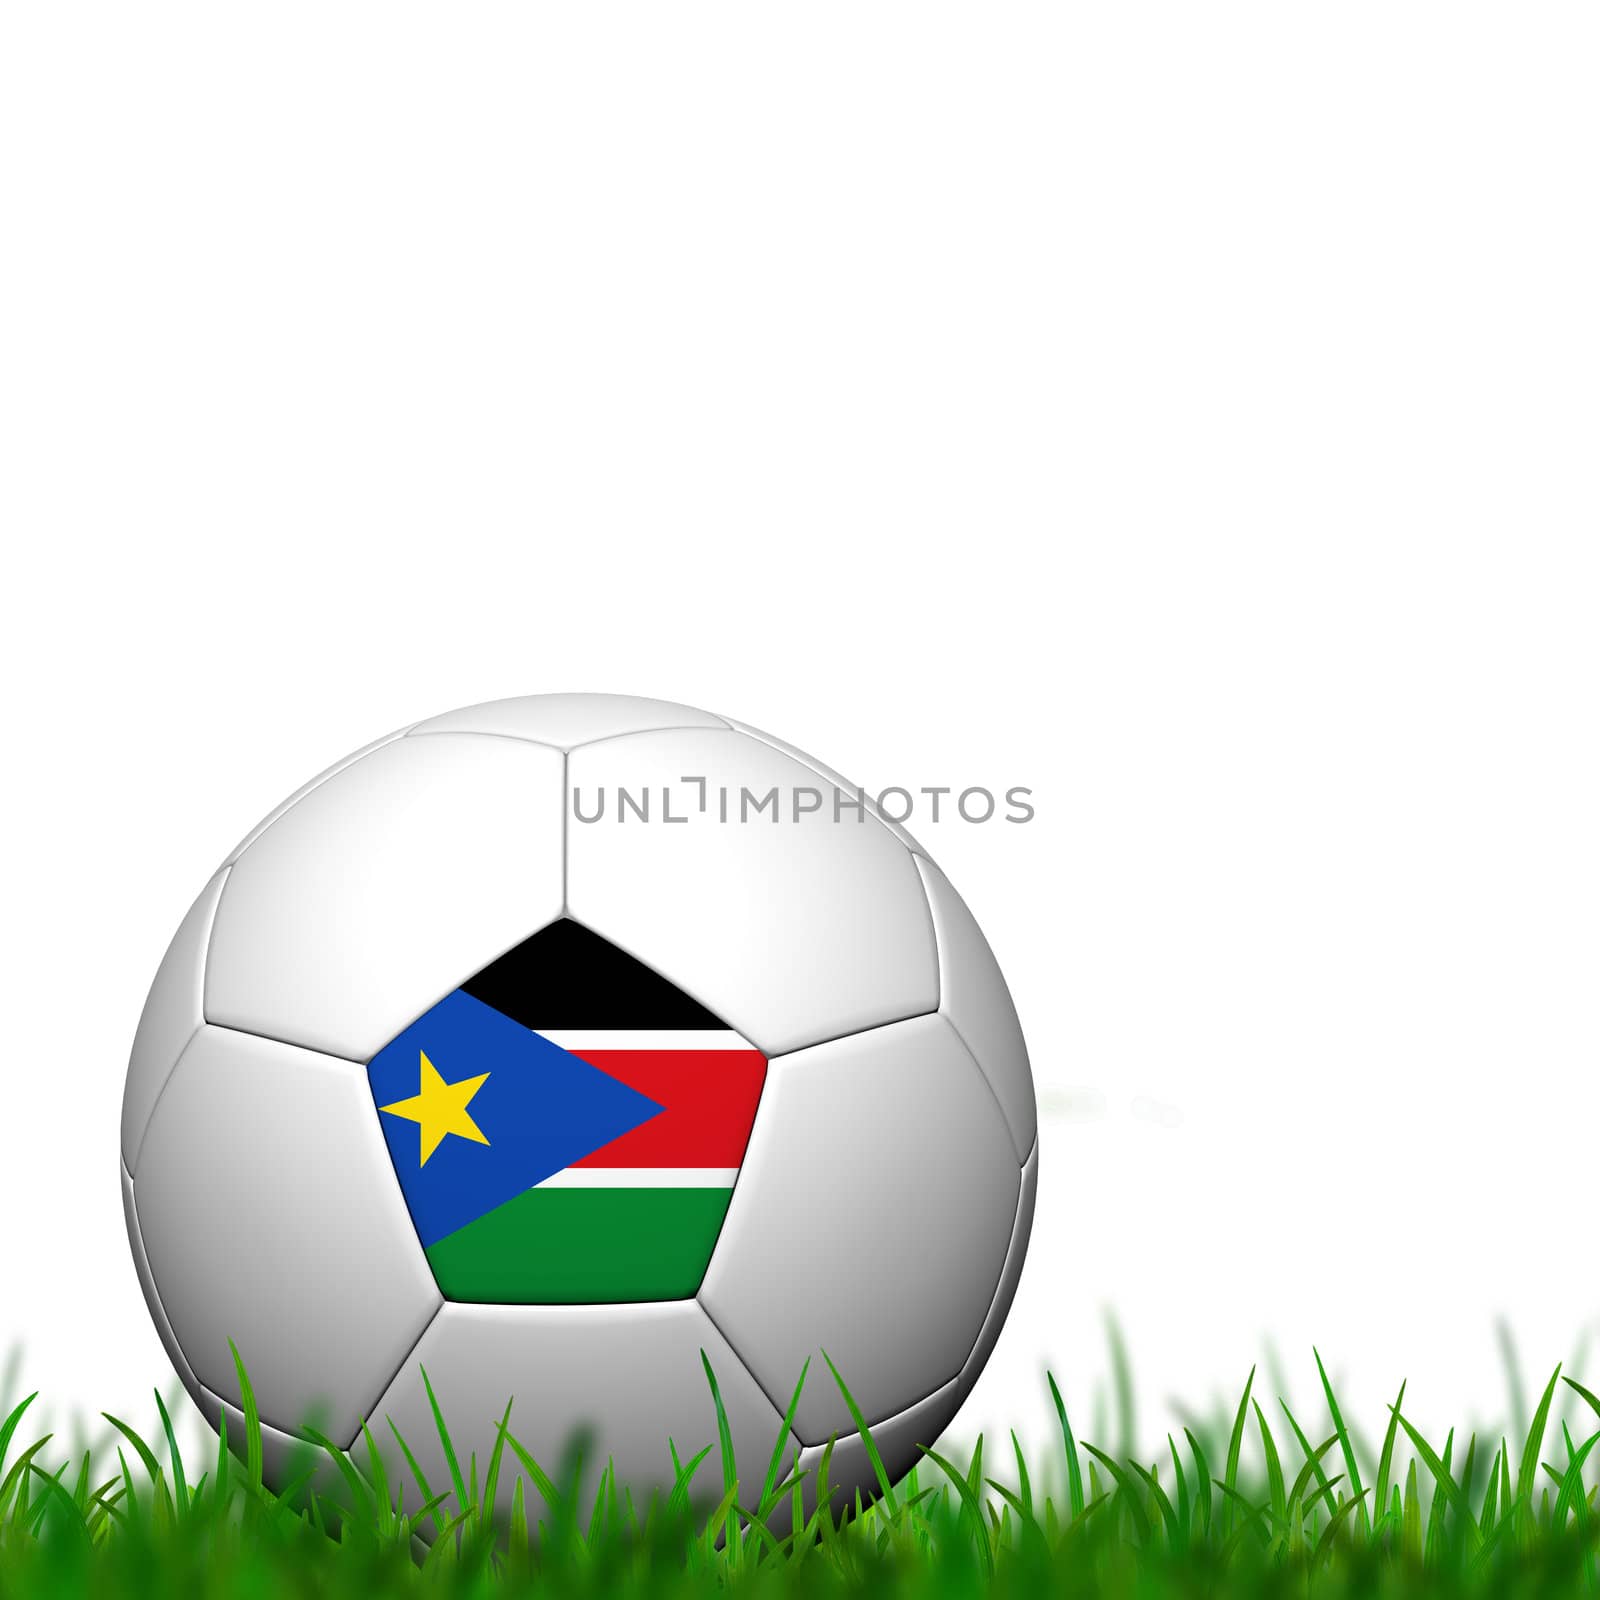 3D Soccer balll Sudan Flag Patter on green grass over white background